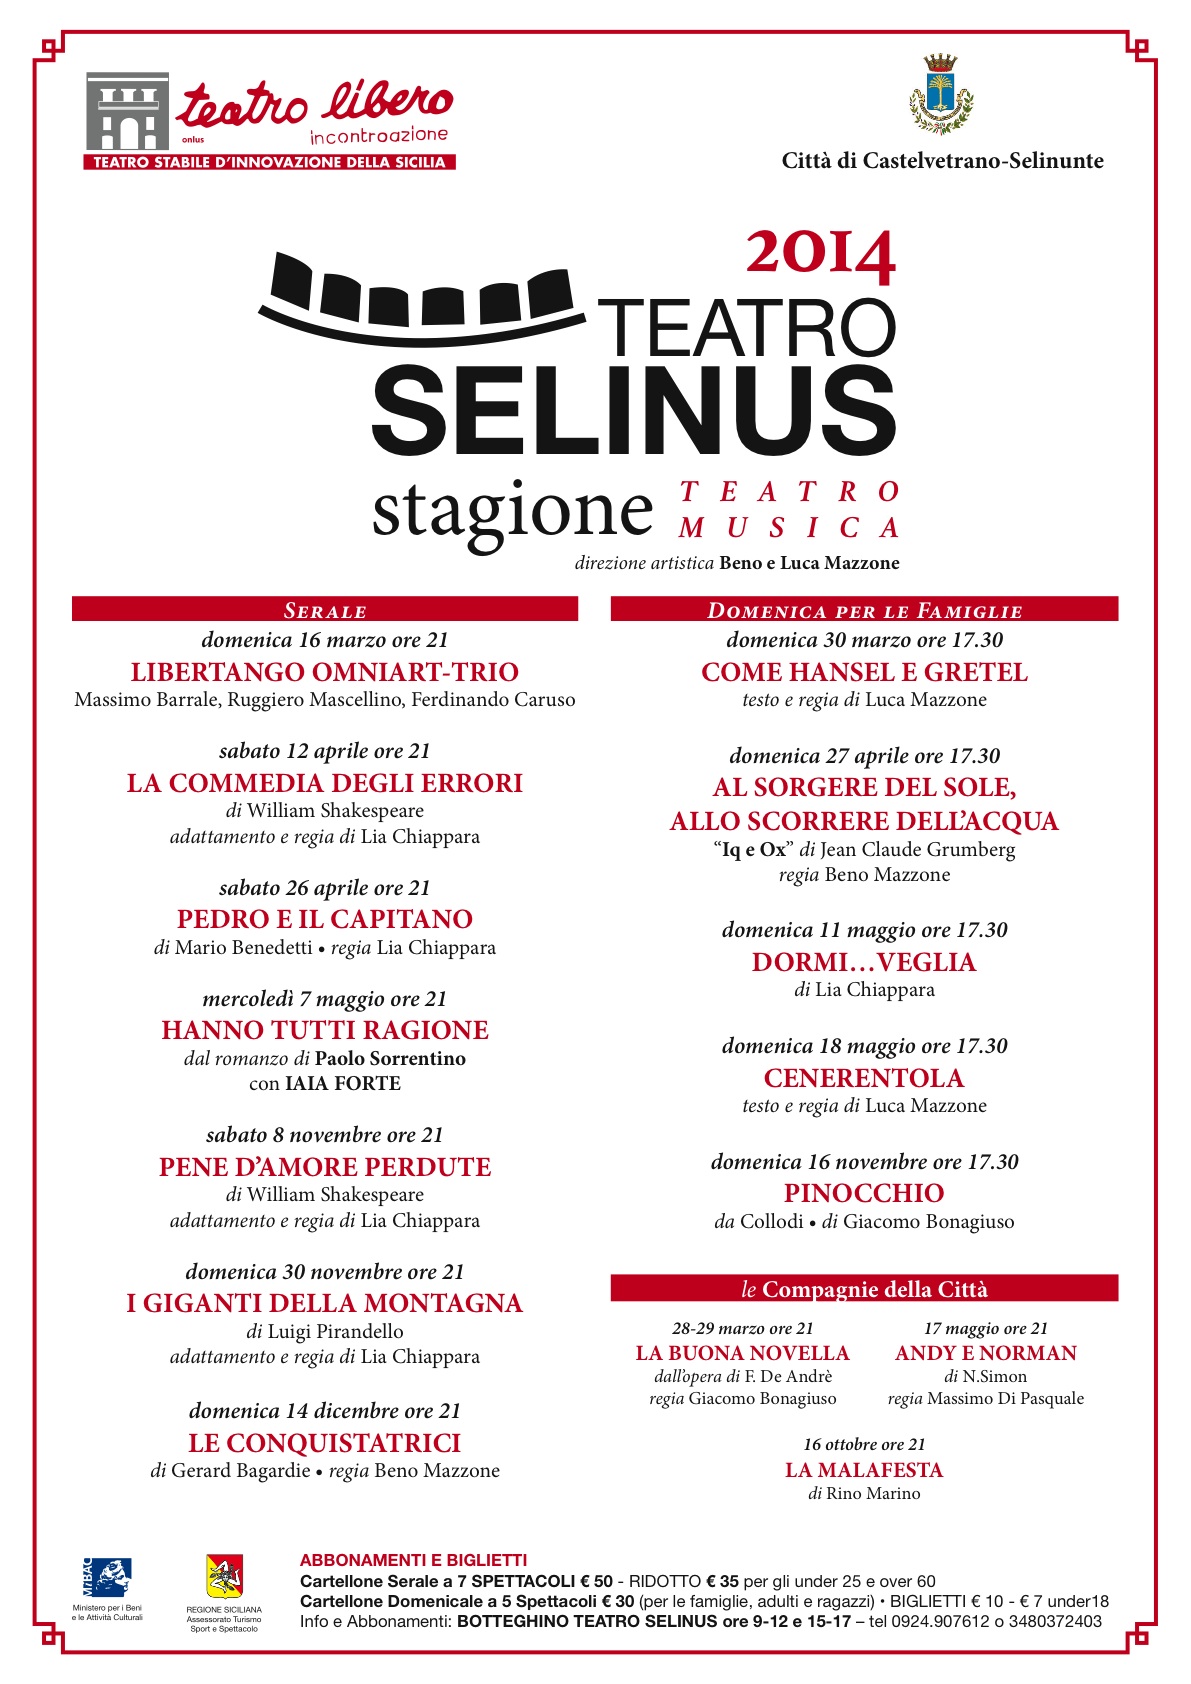 Presentata la stagione del Teatro Selinus 2014